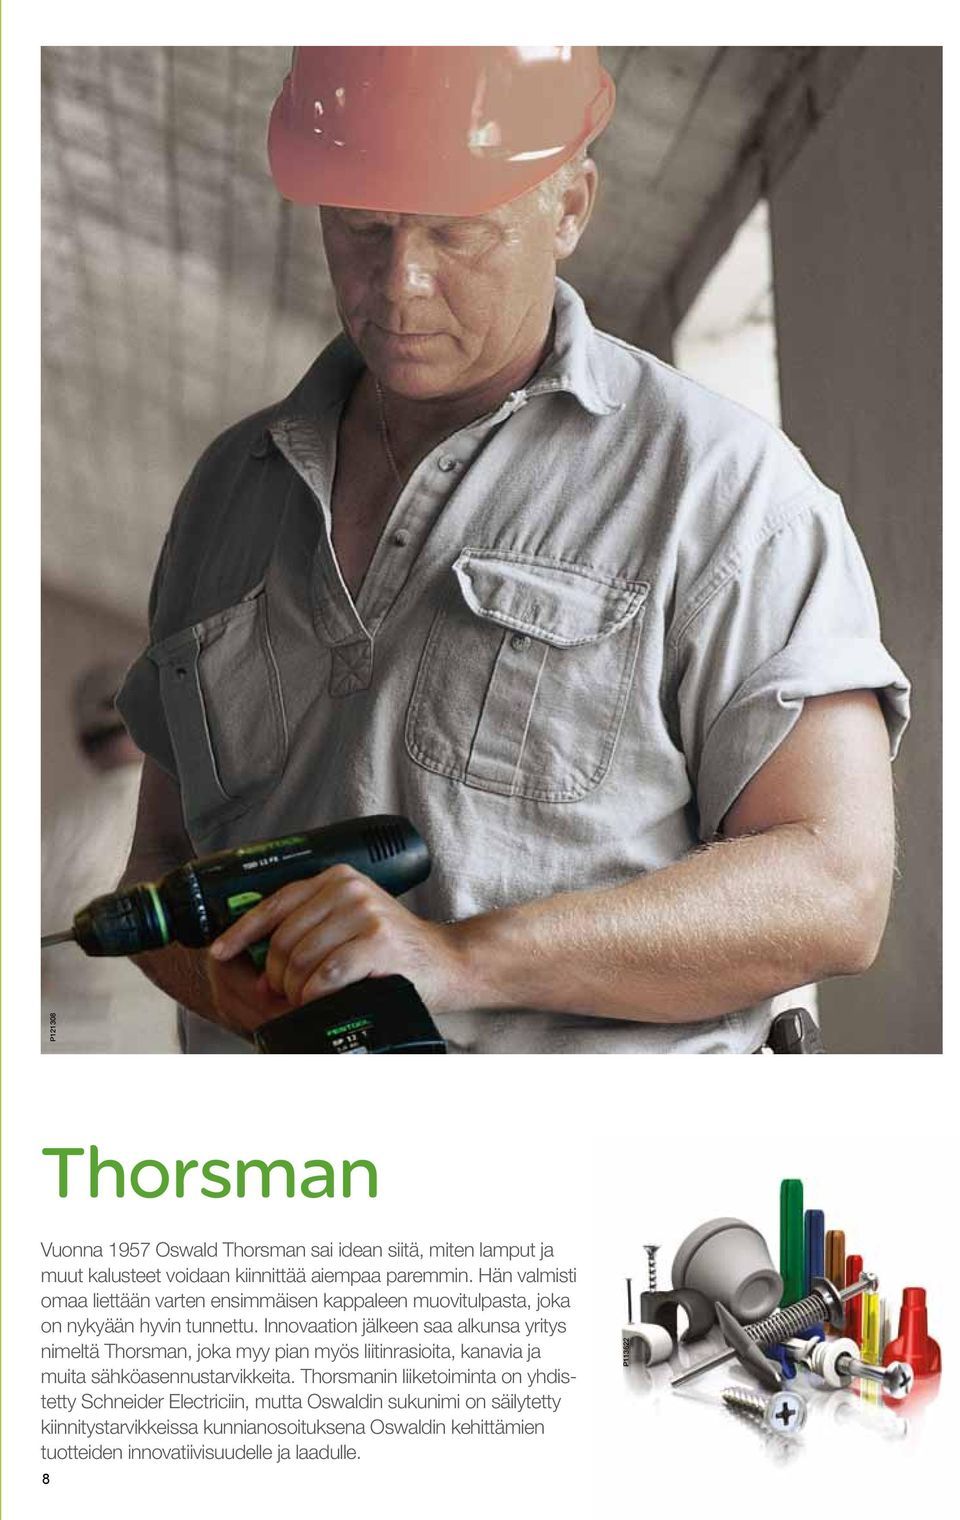 Innovaation jälkeen saa alkunsa yritys nimeltä Thorsman, joka myy pian myös liitinrasioita, kanavia ja muita sähköasennustarvikkeita.